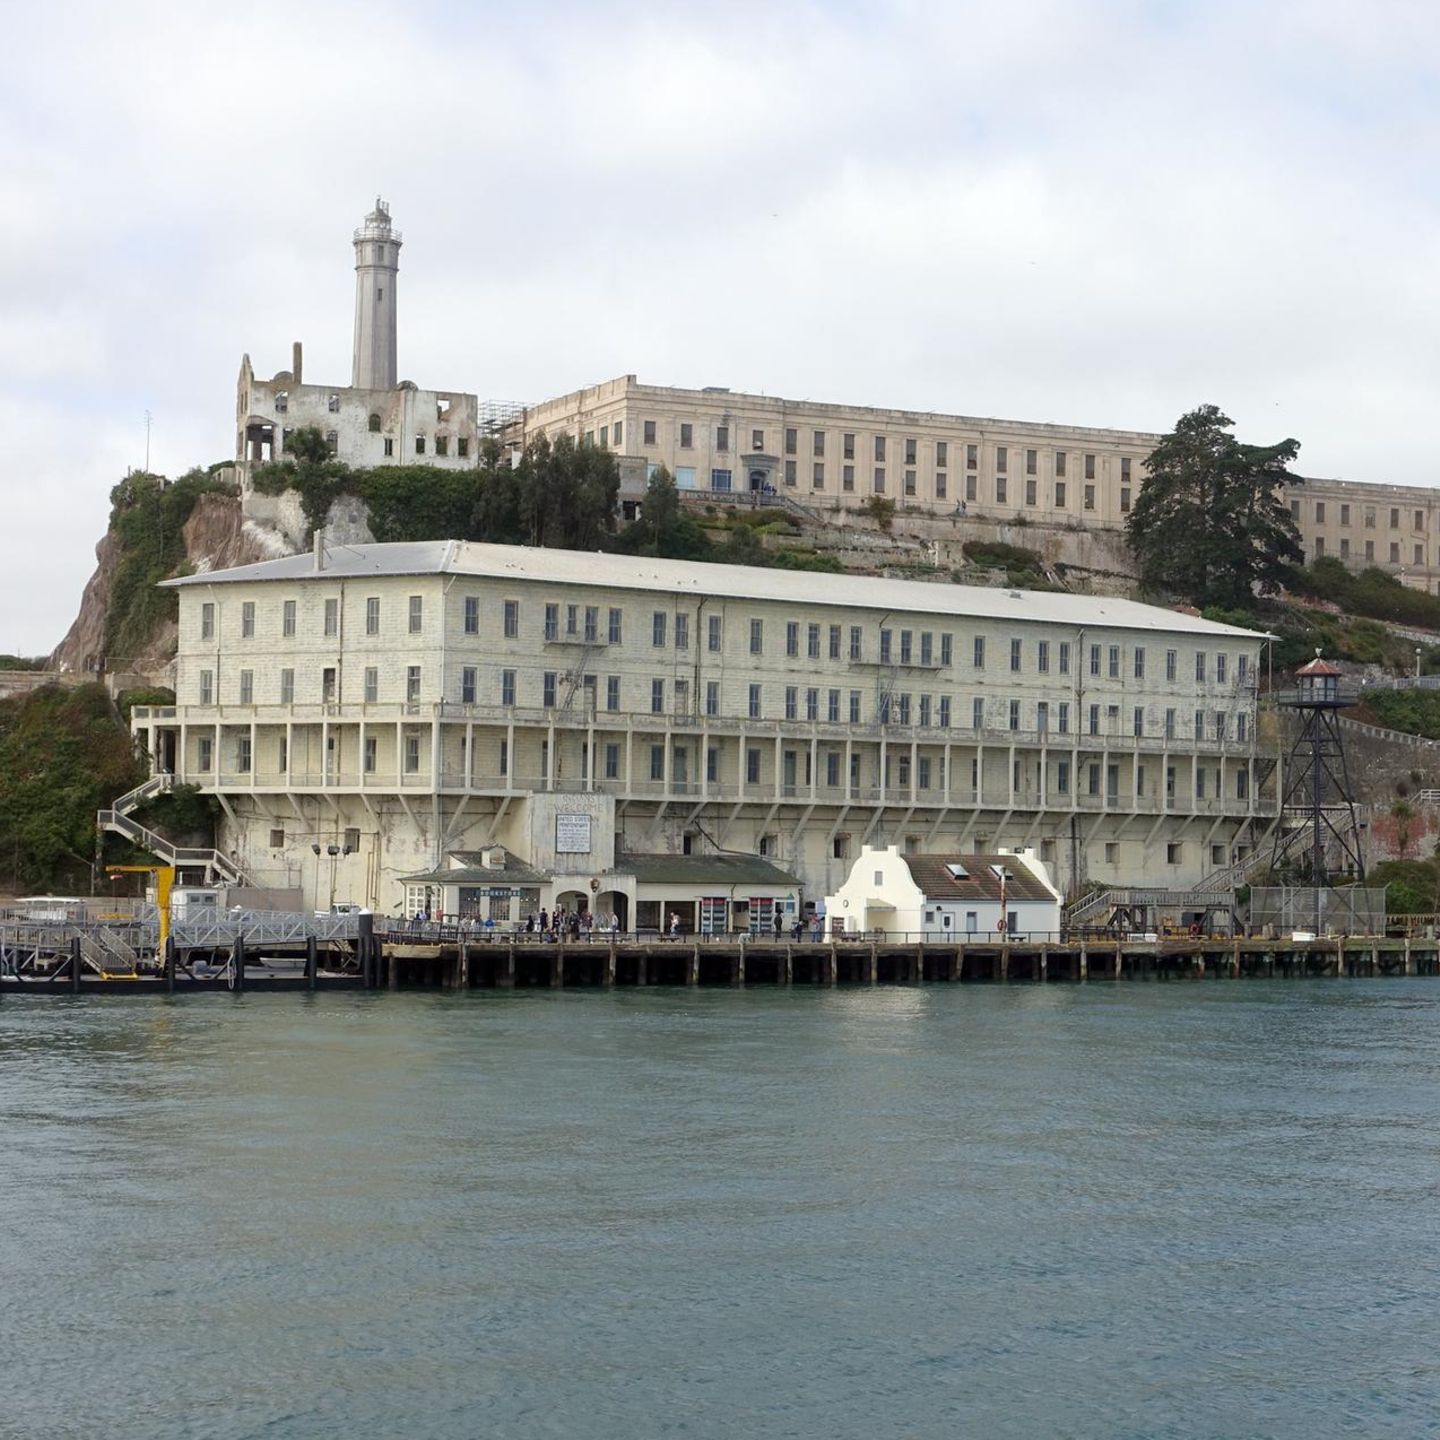 Werkzeuge und Geräte, die während der Flucht aus Alcatraz verwendet wurden  - PICRYL Public Domain-Suche